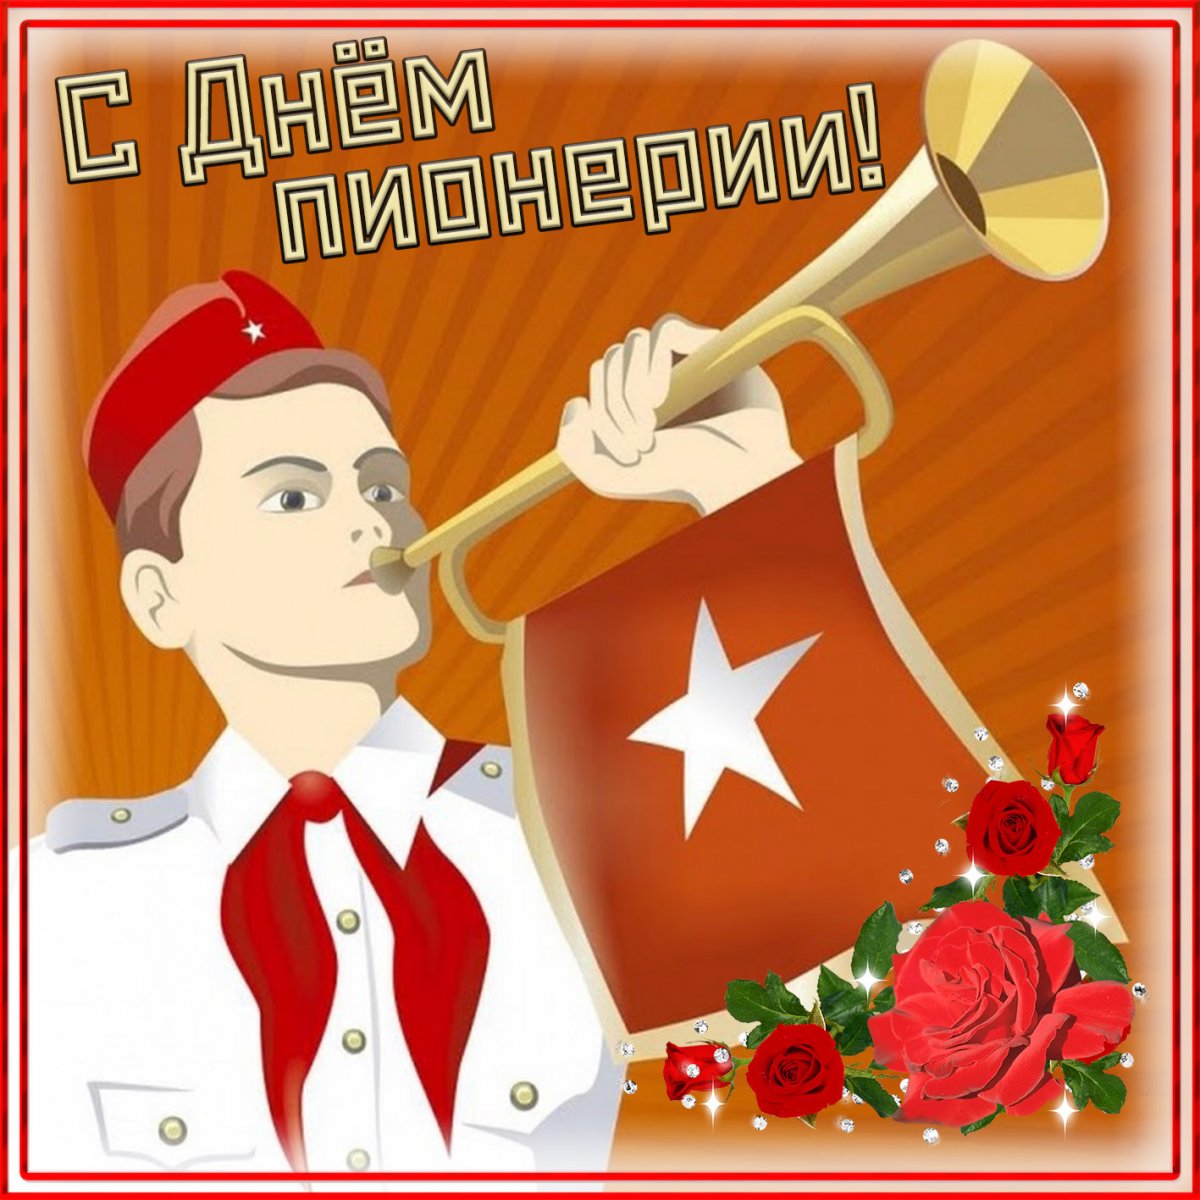 Пионерская организация СССР